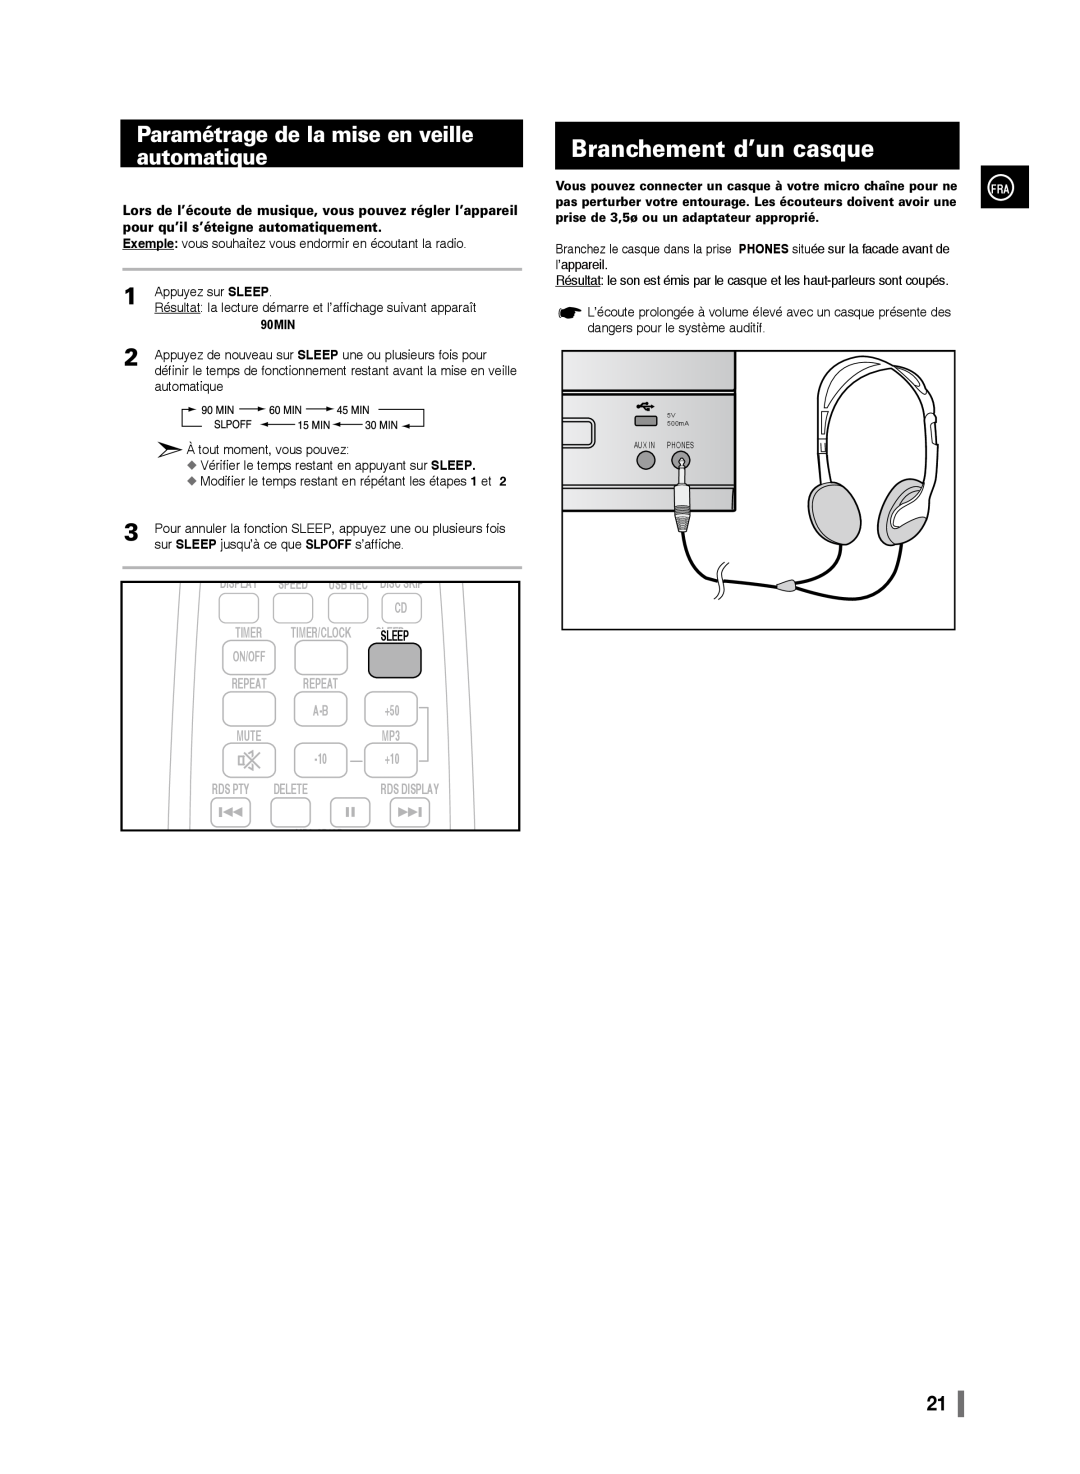 Samsung MM-D320/ZF manual Branchement d’un casque, Paramétrage de la mise en veille automatique, 90MIN, Display, l’appareil 